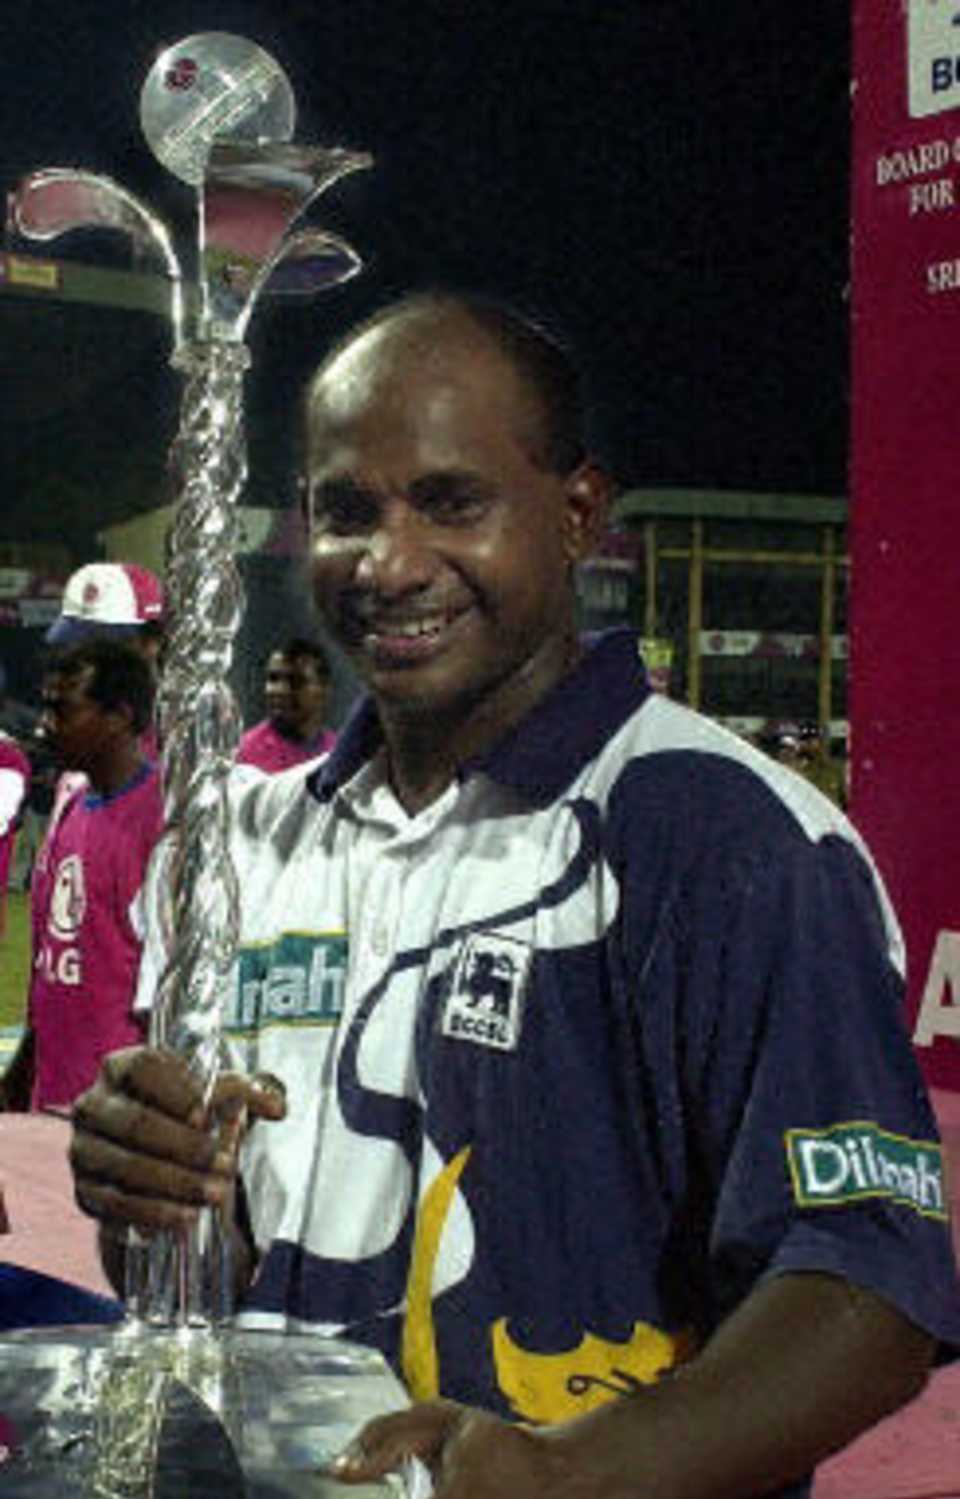 Sri Lankan skipper Sanath Jayasuriya holds the LG Abans trophy